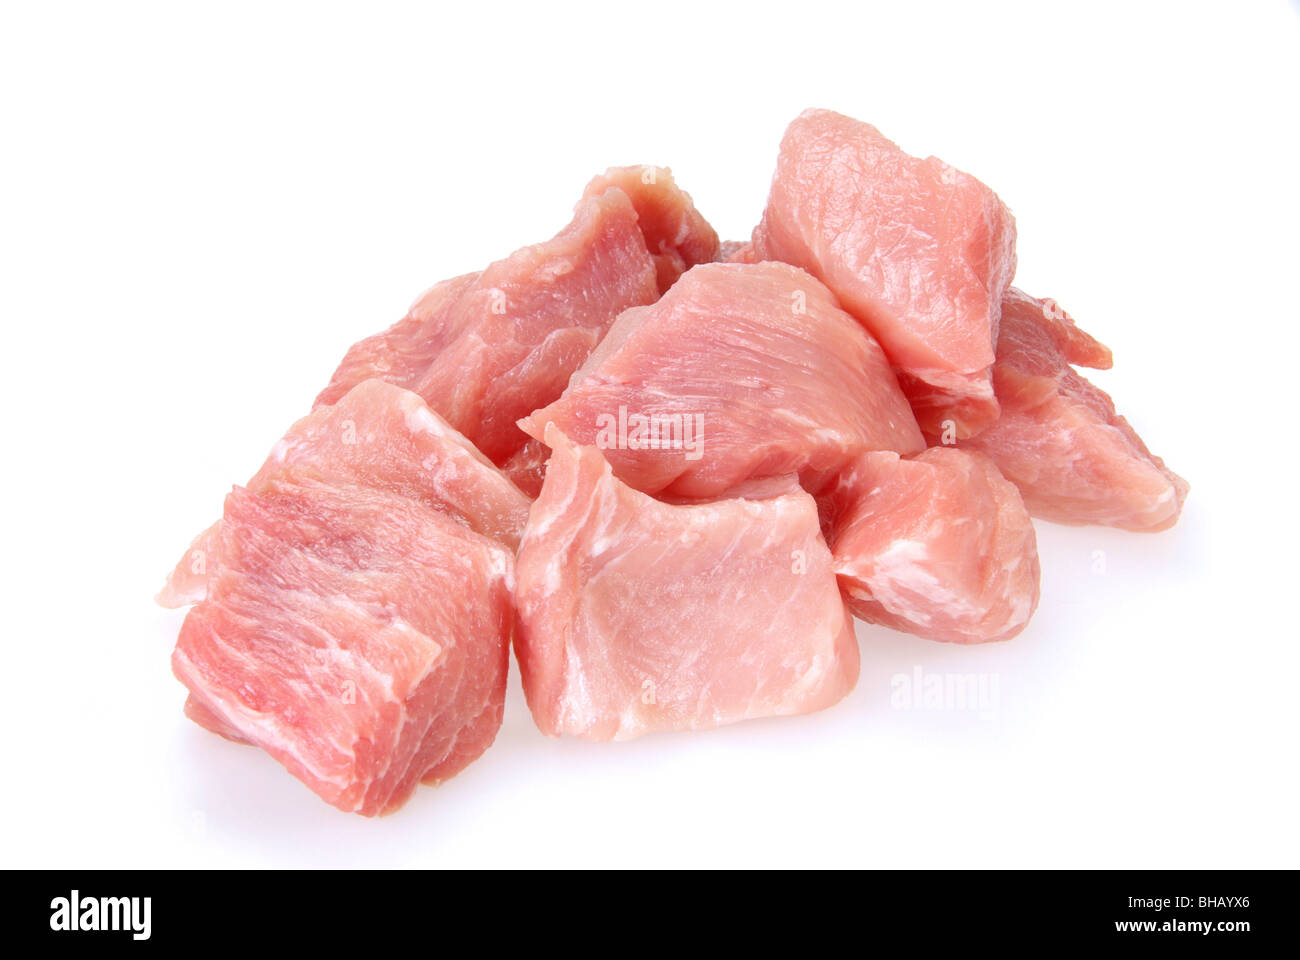 Schweinefleisch roh - pork raw 07 Stock Photo